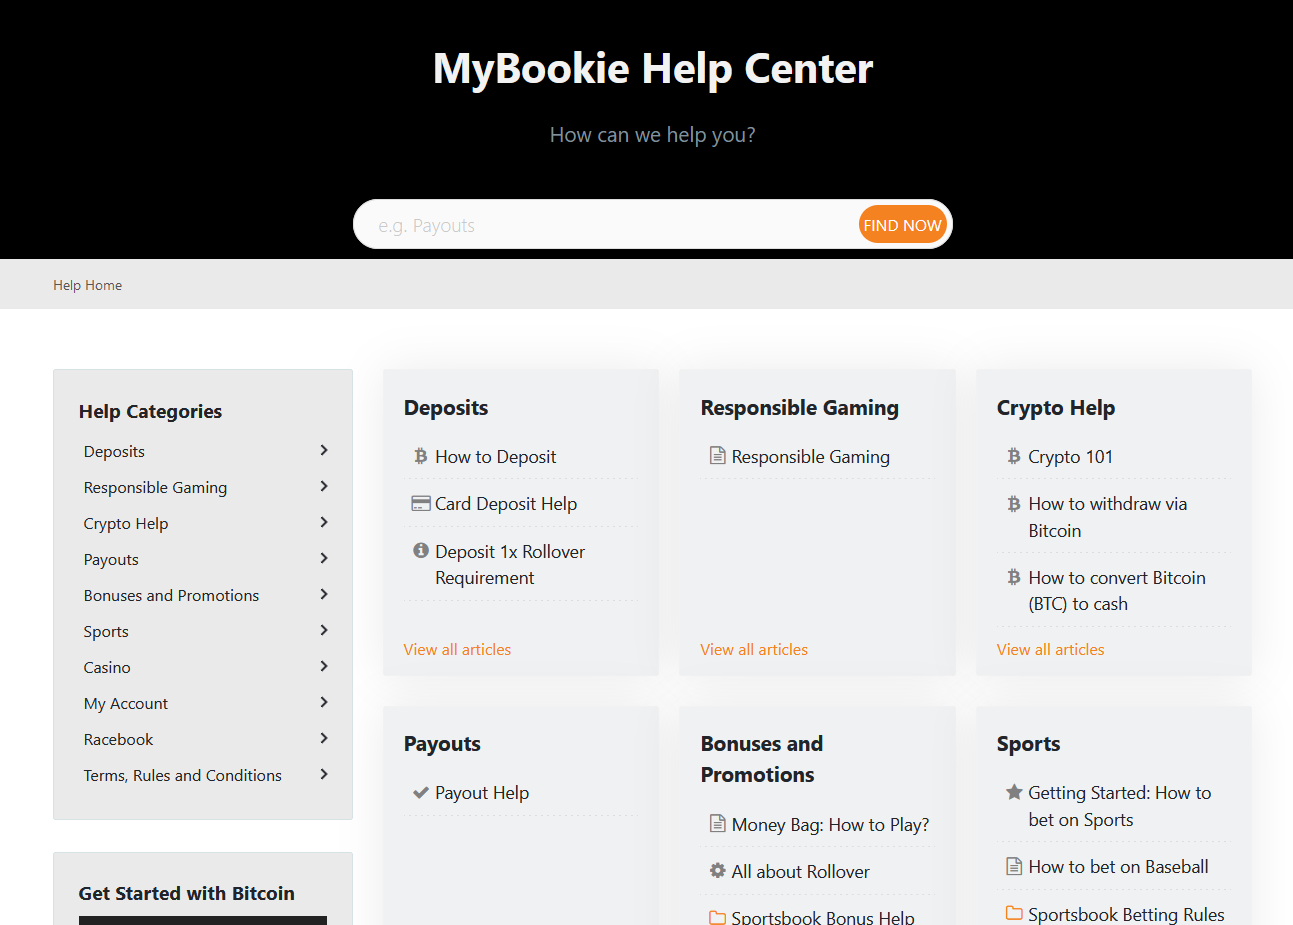 MyBookie Help Center